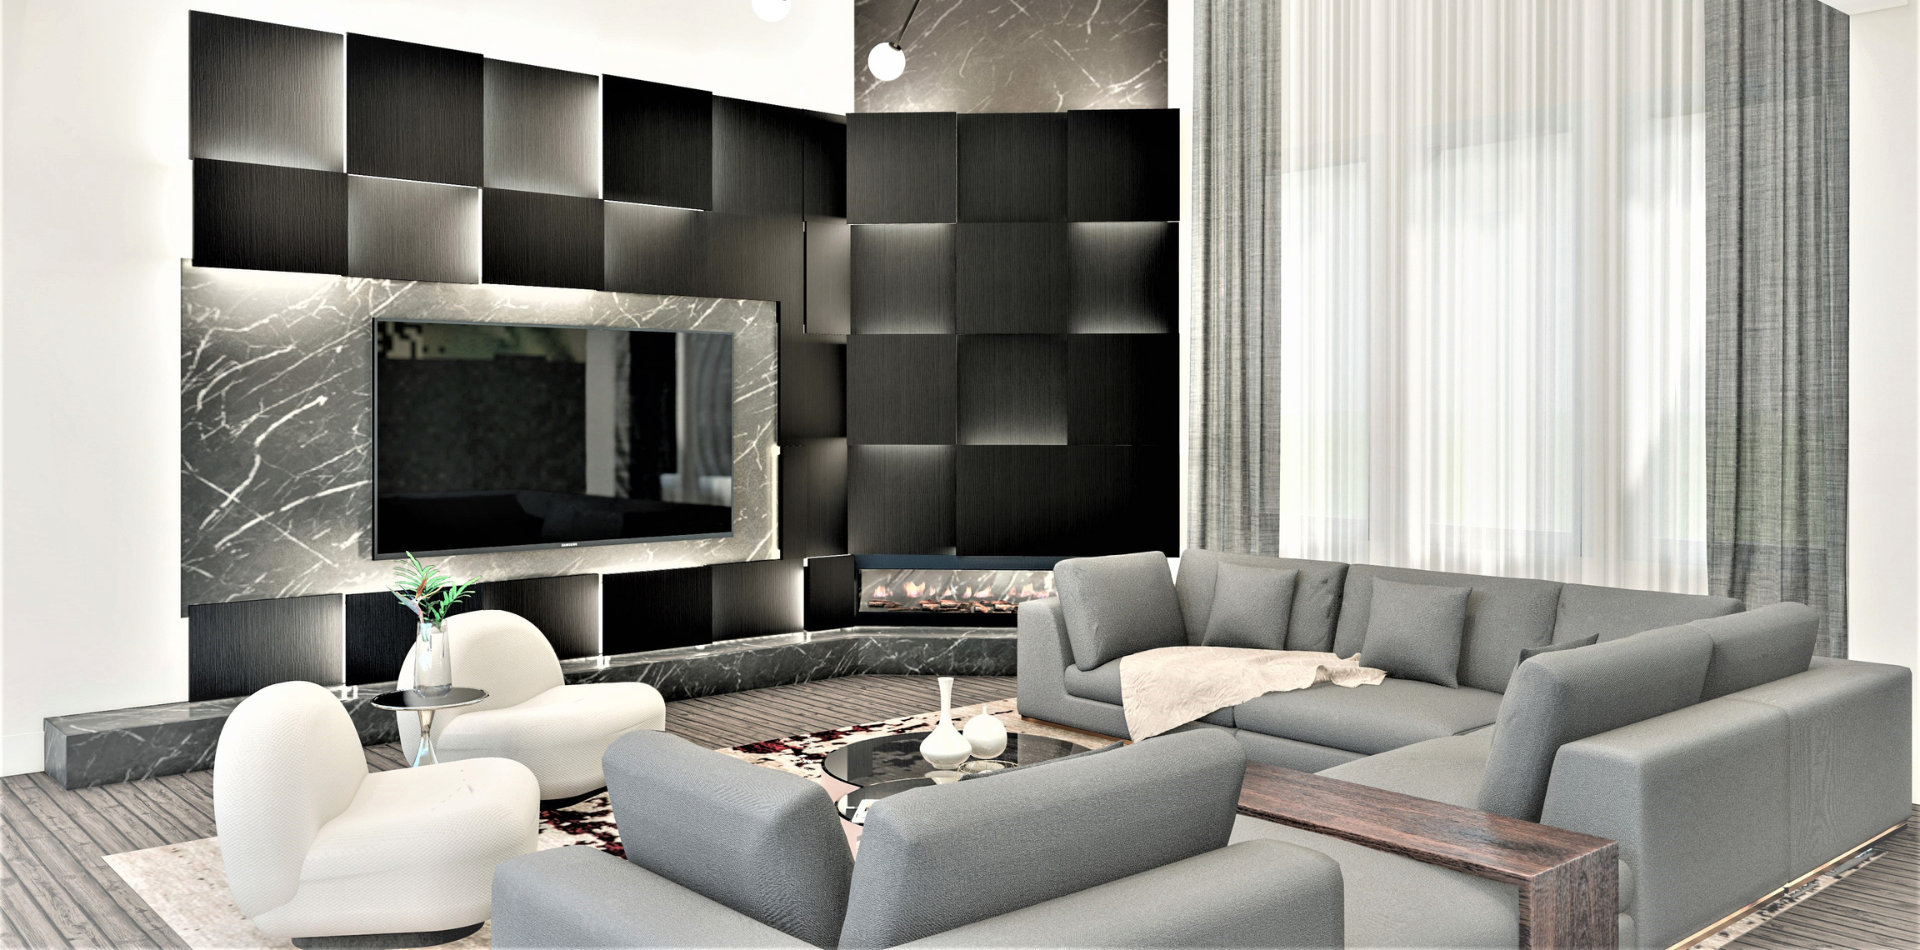 AV Design Studio - Interior · architecture · design - AV Design Studio Architecture Interior and furniture